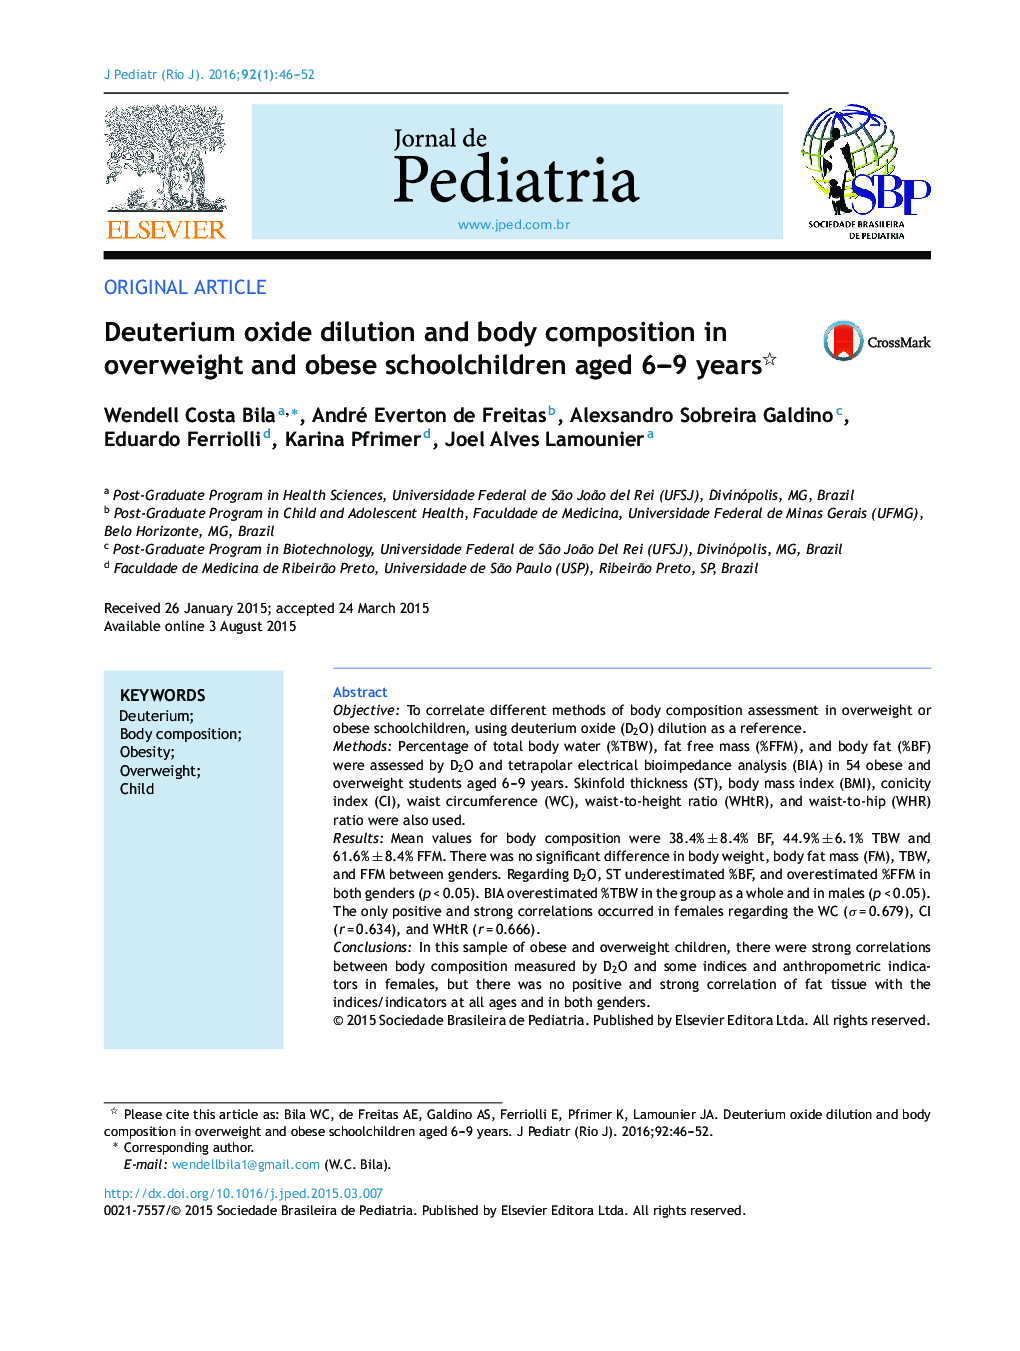 رقیق اکسید دوتریوم و ترکیب بدن در دانش آموزان مبتلا به اضافه وزن و چاق 6 ساله 9 ساله 